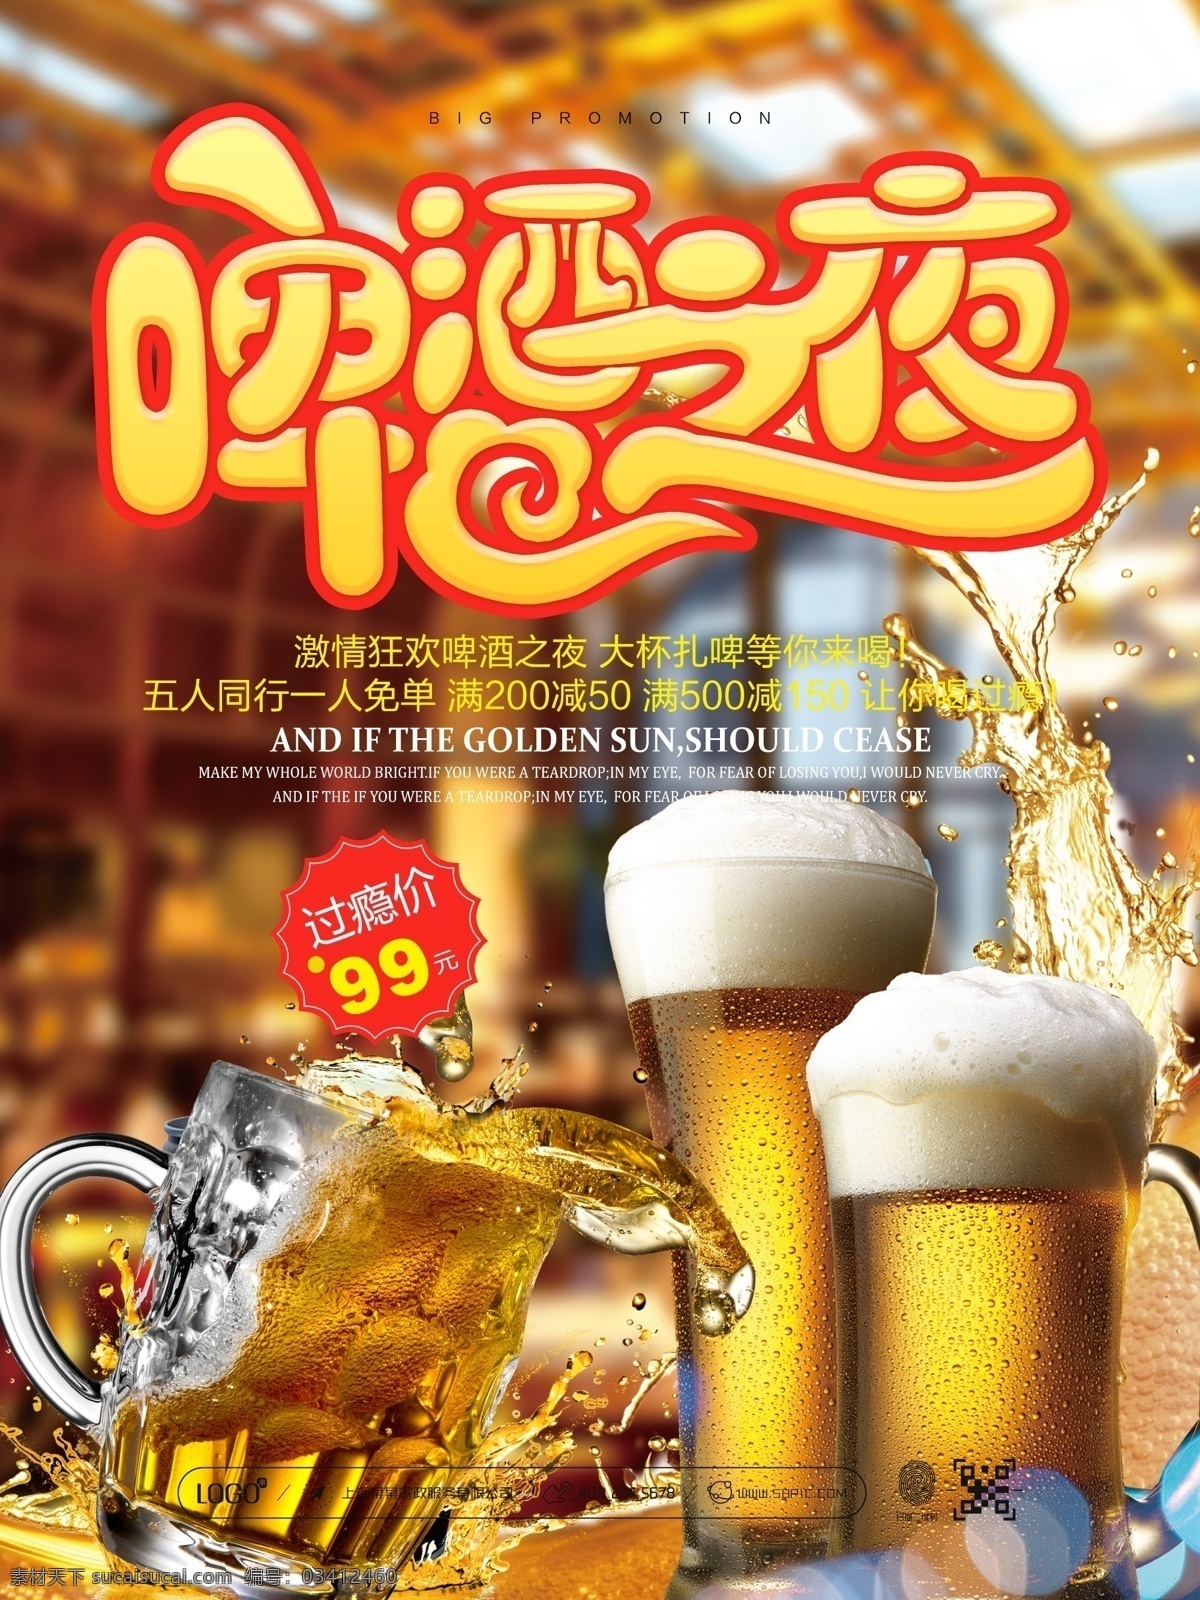 盛夏 夏日 啤酒之夜 啤酒节 啤酒 扎啤 啤酒海报 啤酒广告 啤酒素材 哈啤一夏 活动 宣传 促销 海报